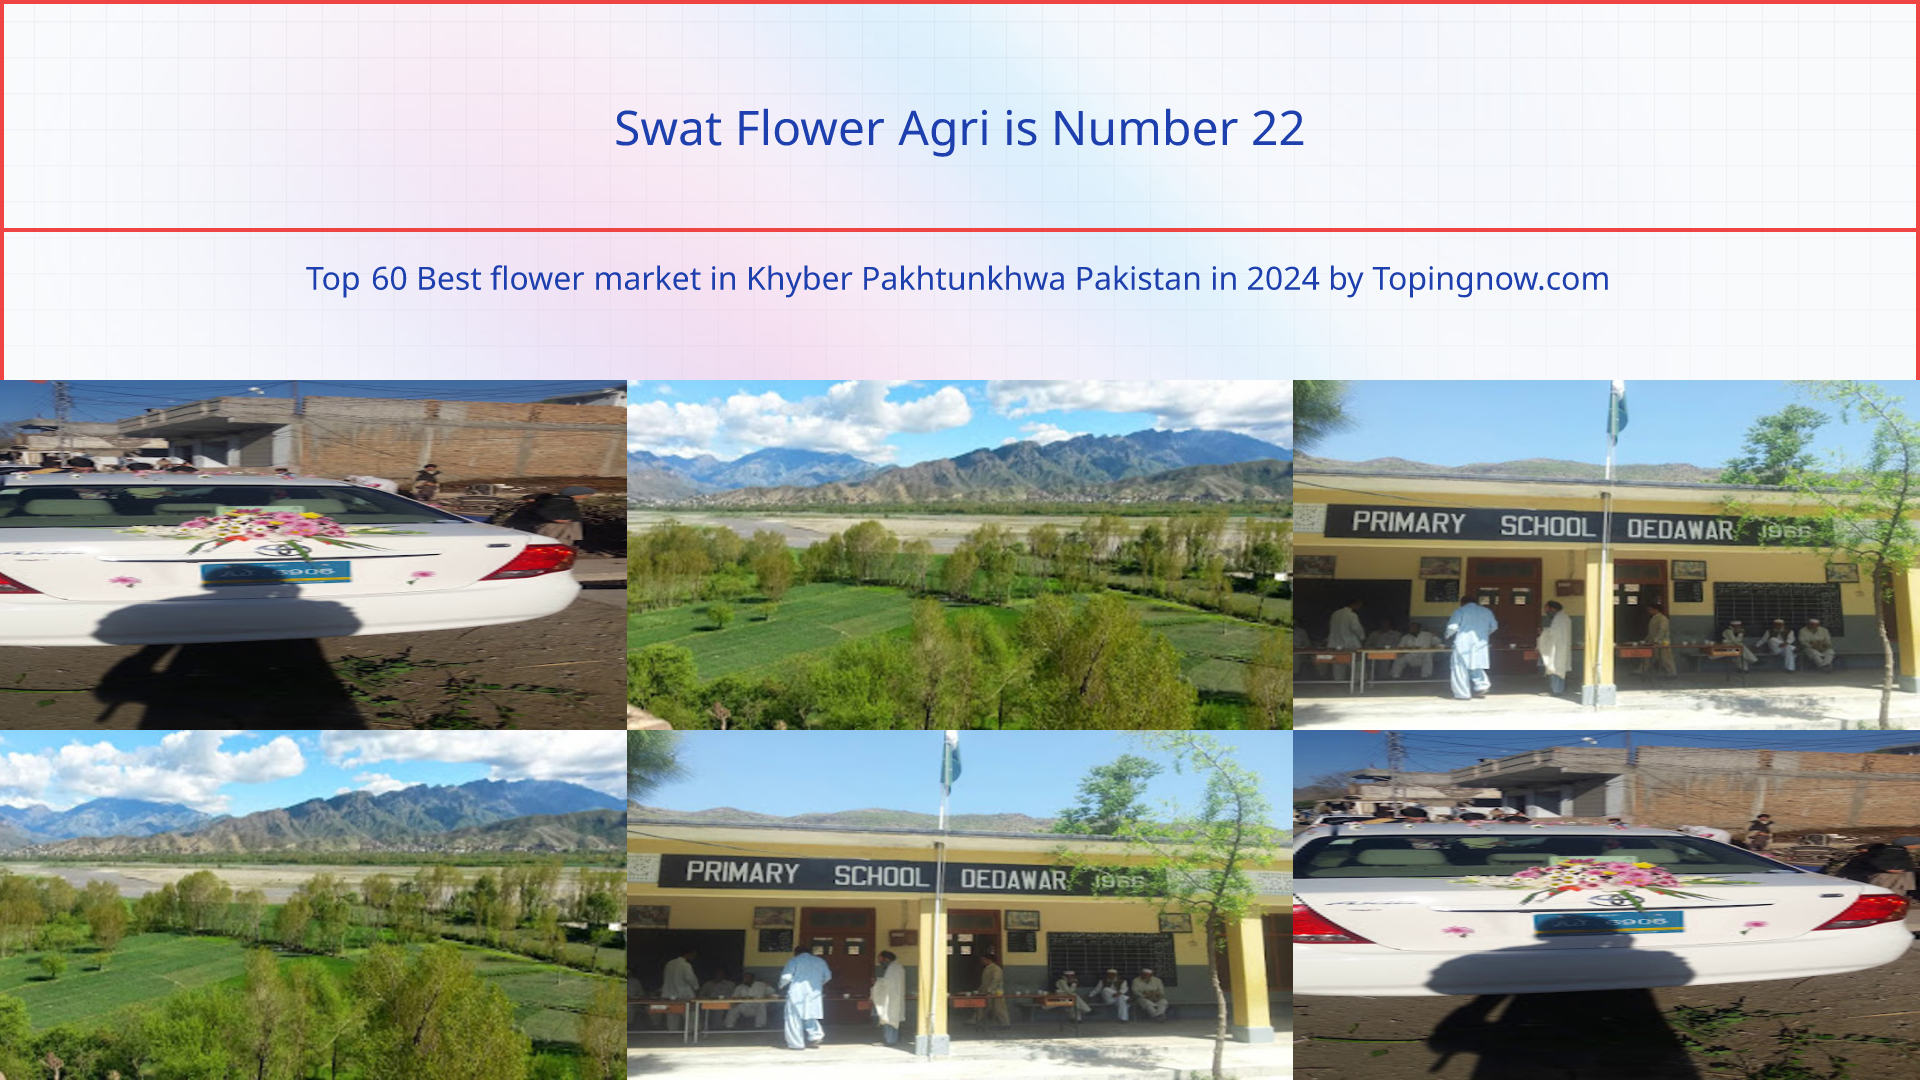 Swat Flower Agri: Top 60 Best flower market in Khyber Pakhtunkhwa Pakistan in 2024